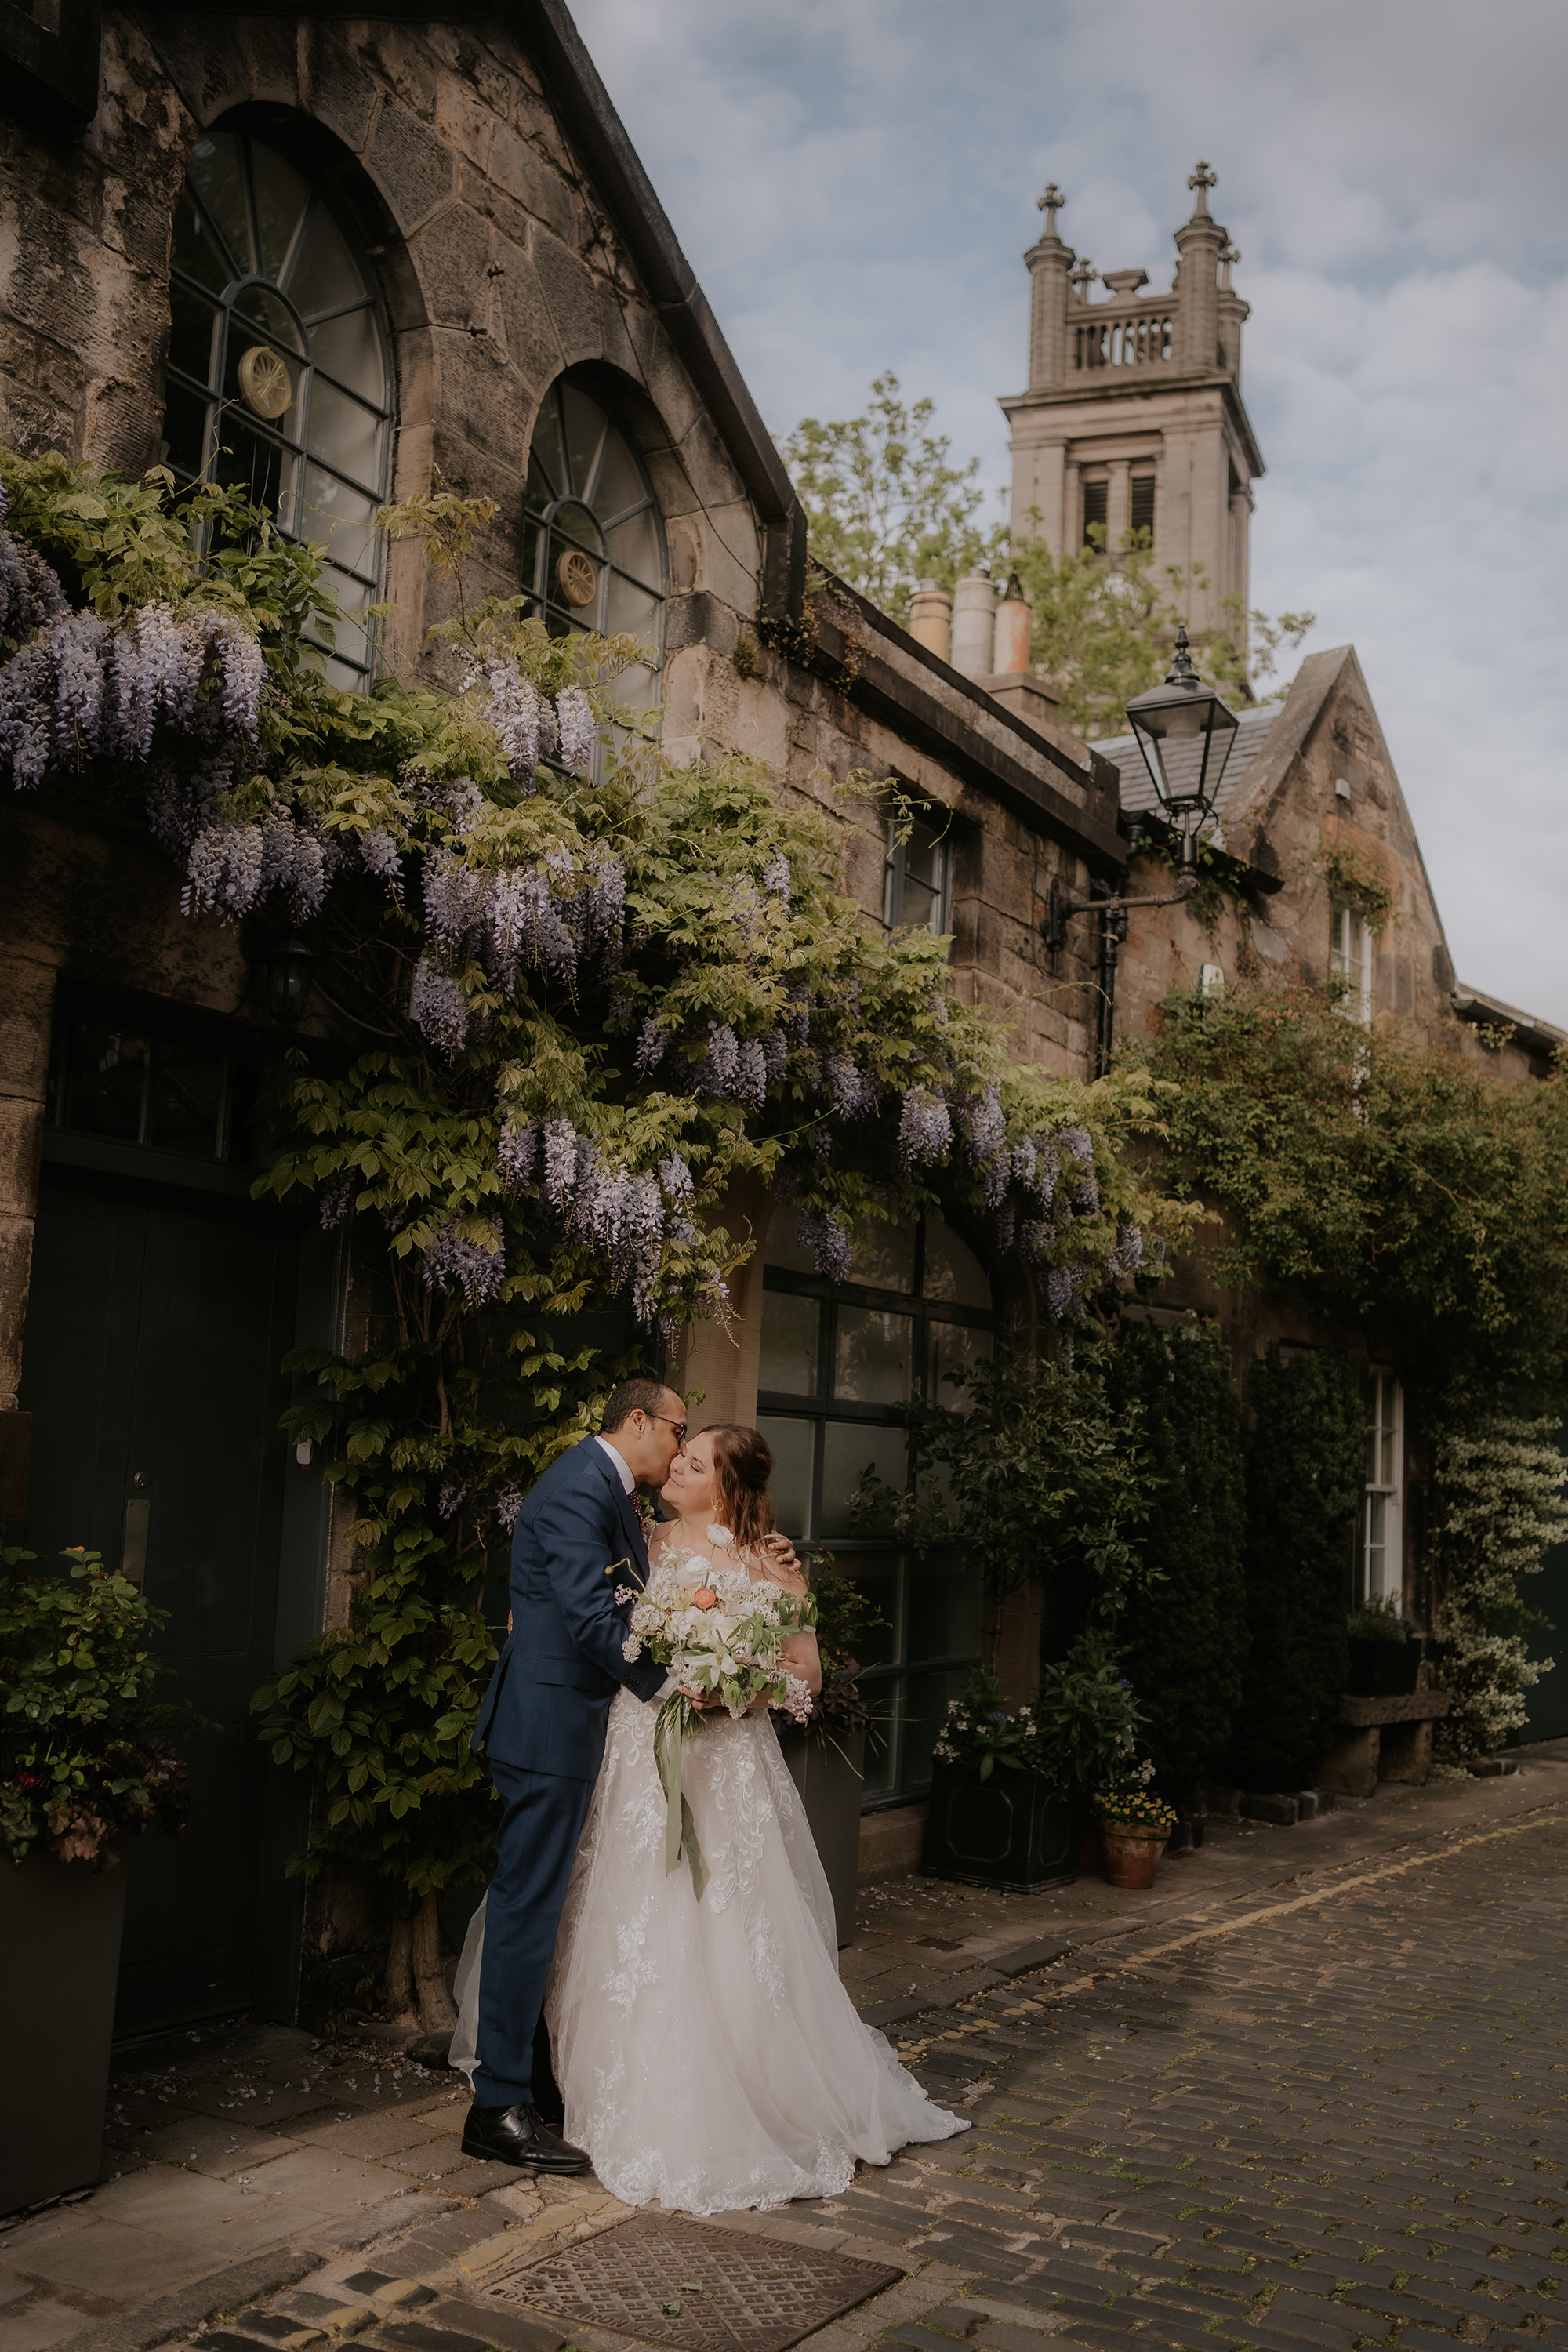 Wedding photos under wisteria arched in spring in Edinburgh